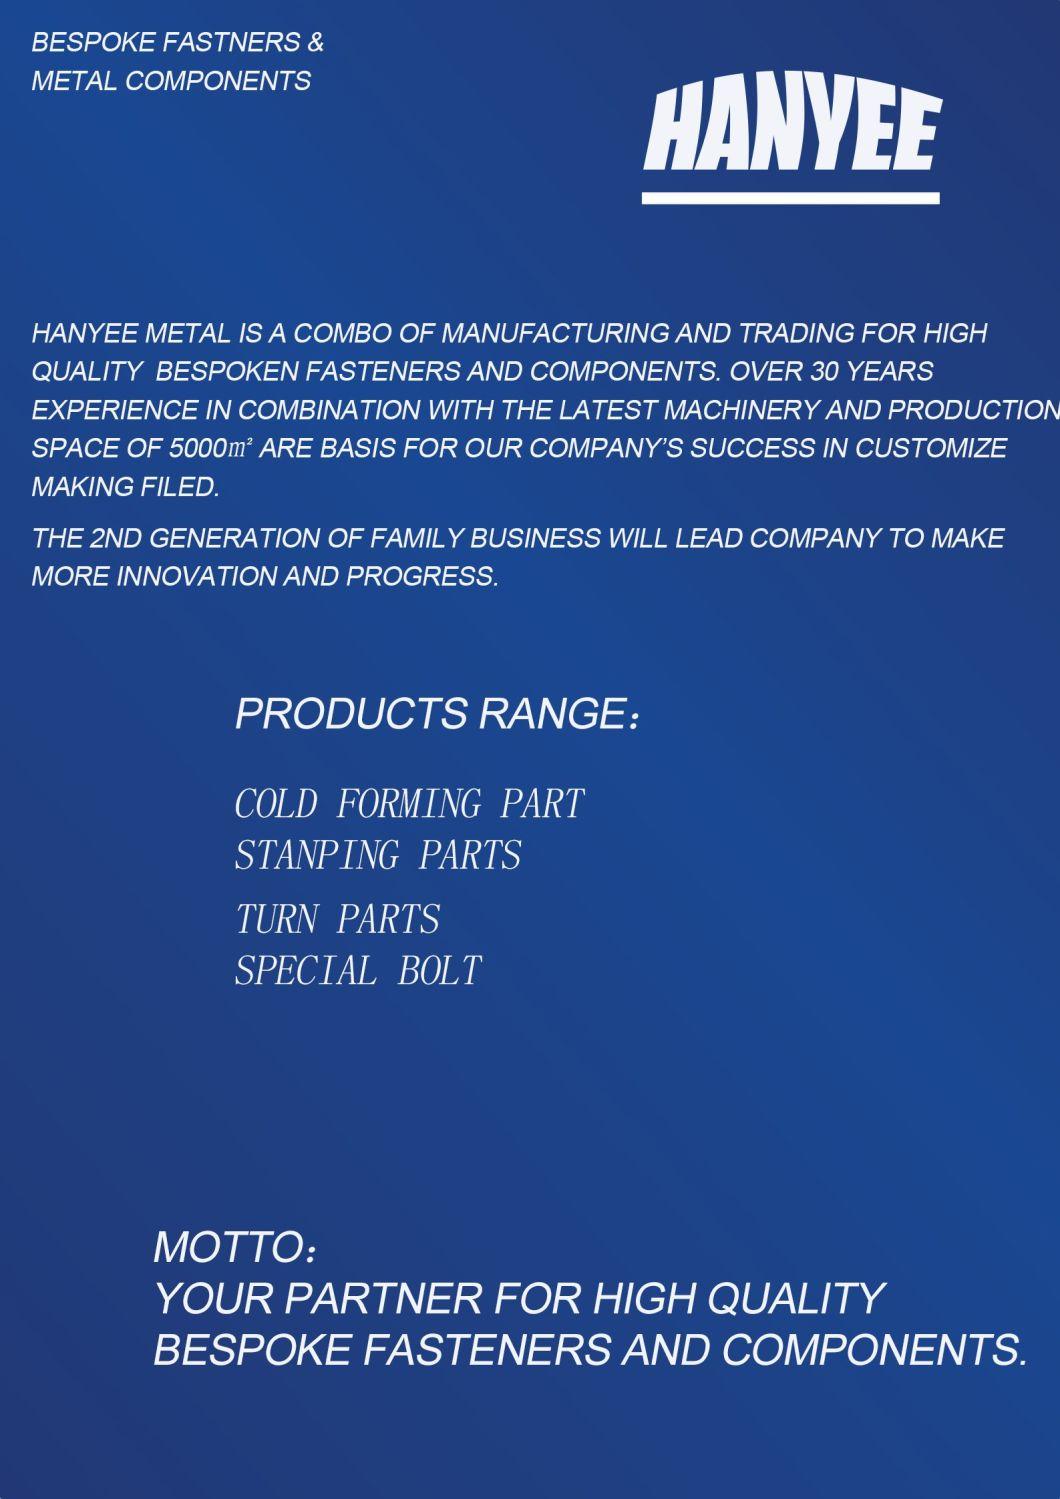 Chinese OEM Fastener Manufacturer Hexgon Shank Pin Fitting